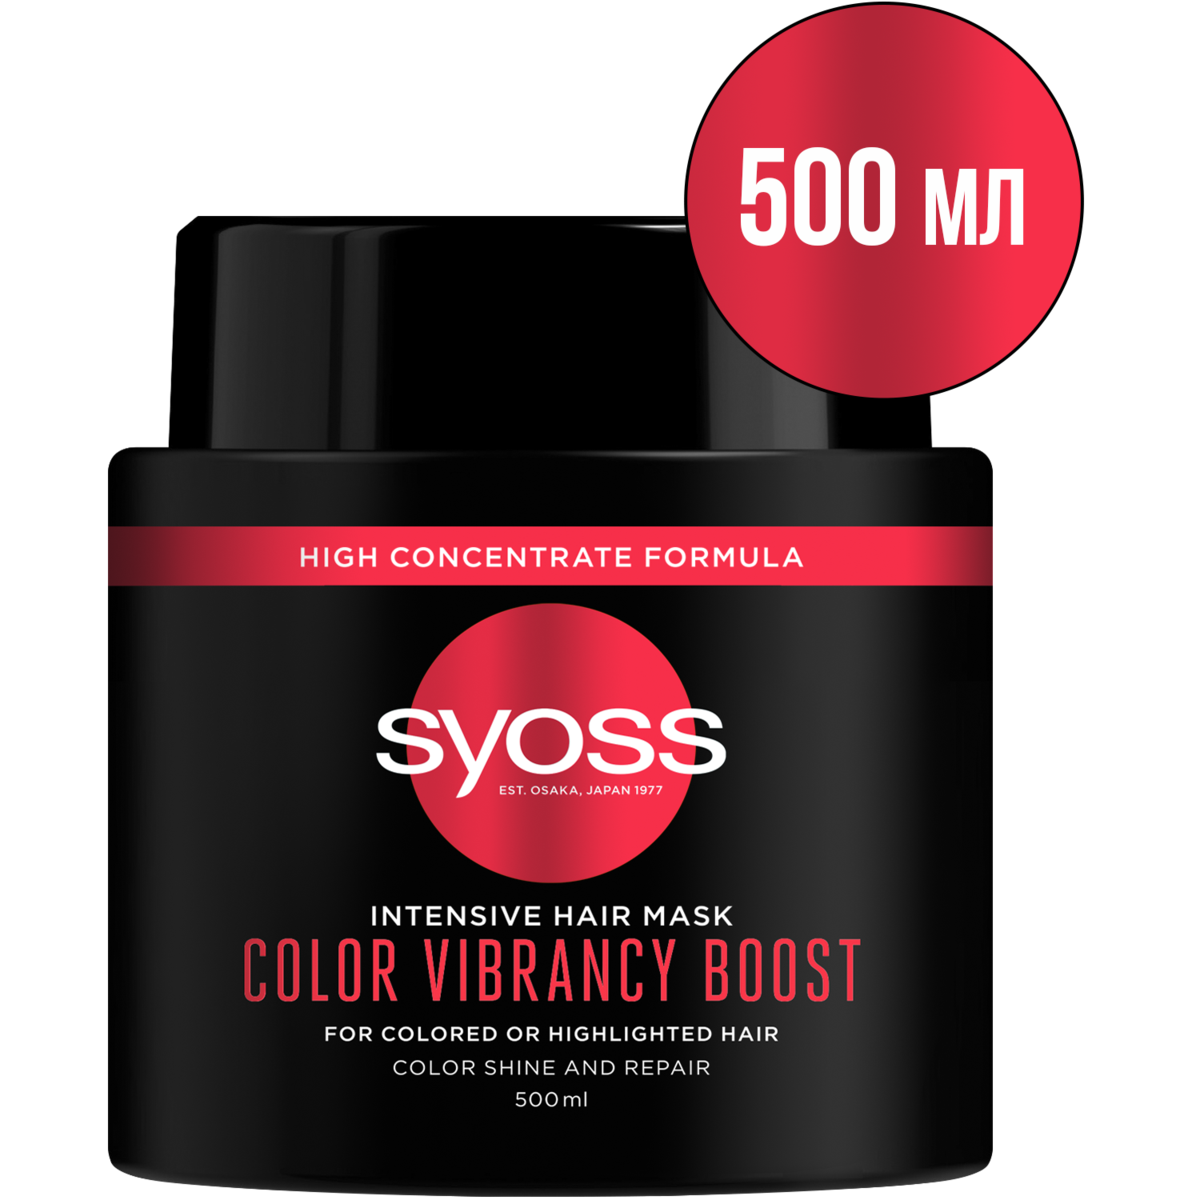 Интенсивная маска для окрашенных волос Syoss Color Vibrancy Boost, 500 мл - фото 1